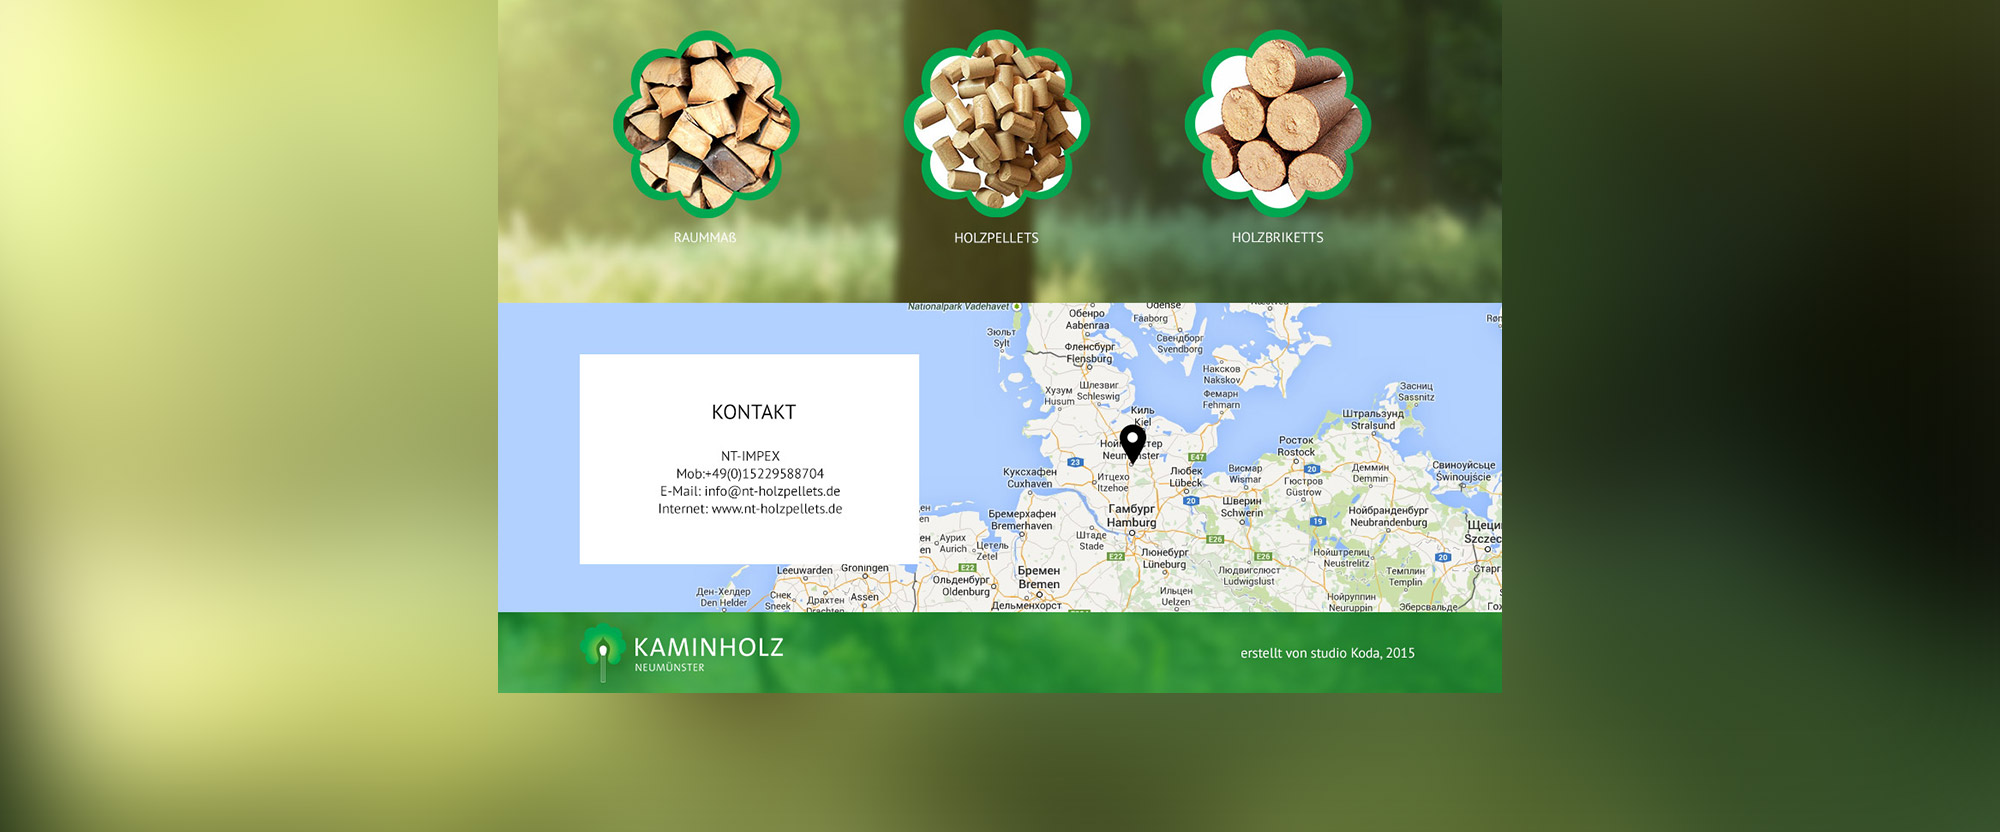 Создание сайта-визитки для производителей биотоплива «Kaminholz»